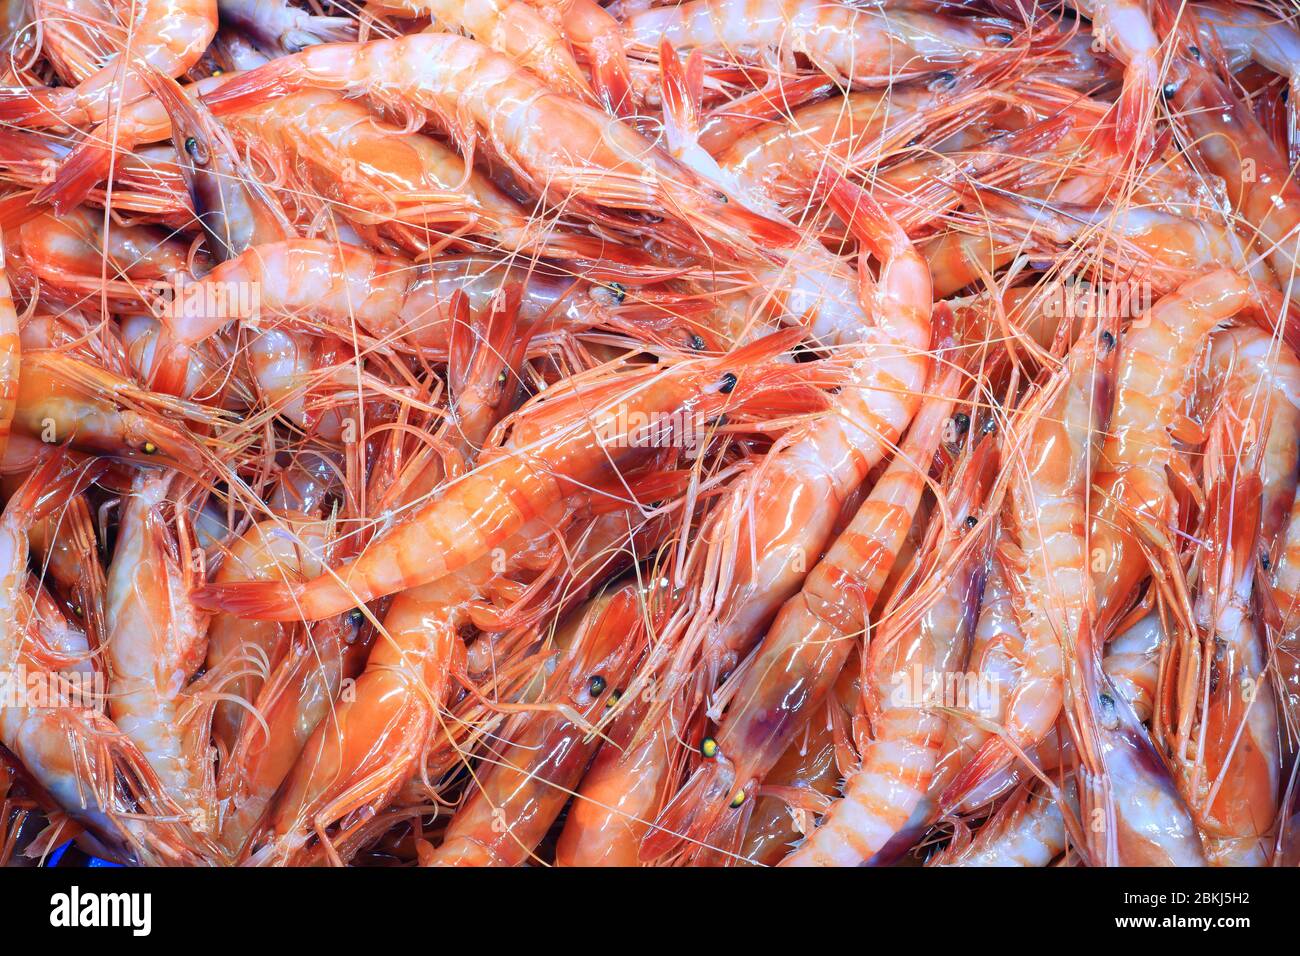 Spain, Catalonia, Baix Empordà Costa Brava, Palamós, Palamós fish market, shrimps Stock Photo